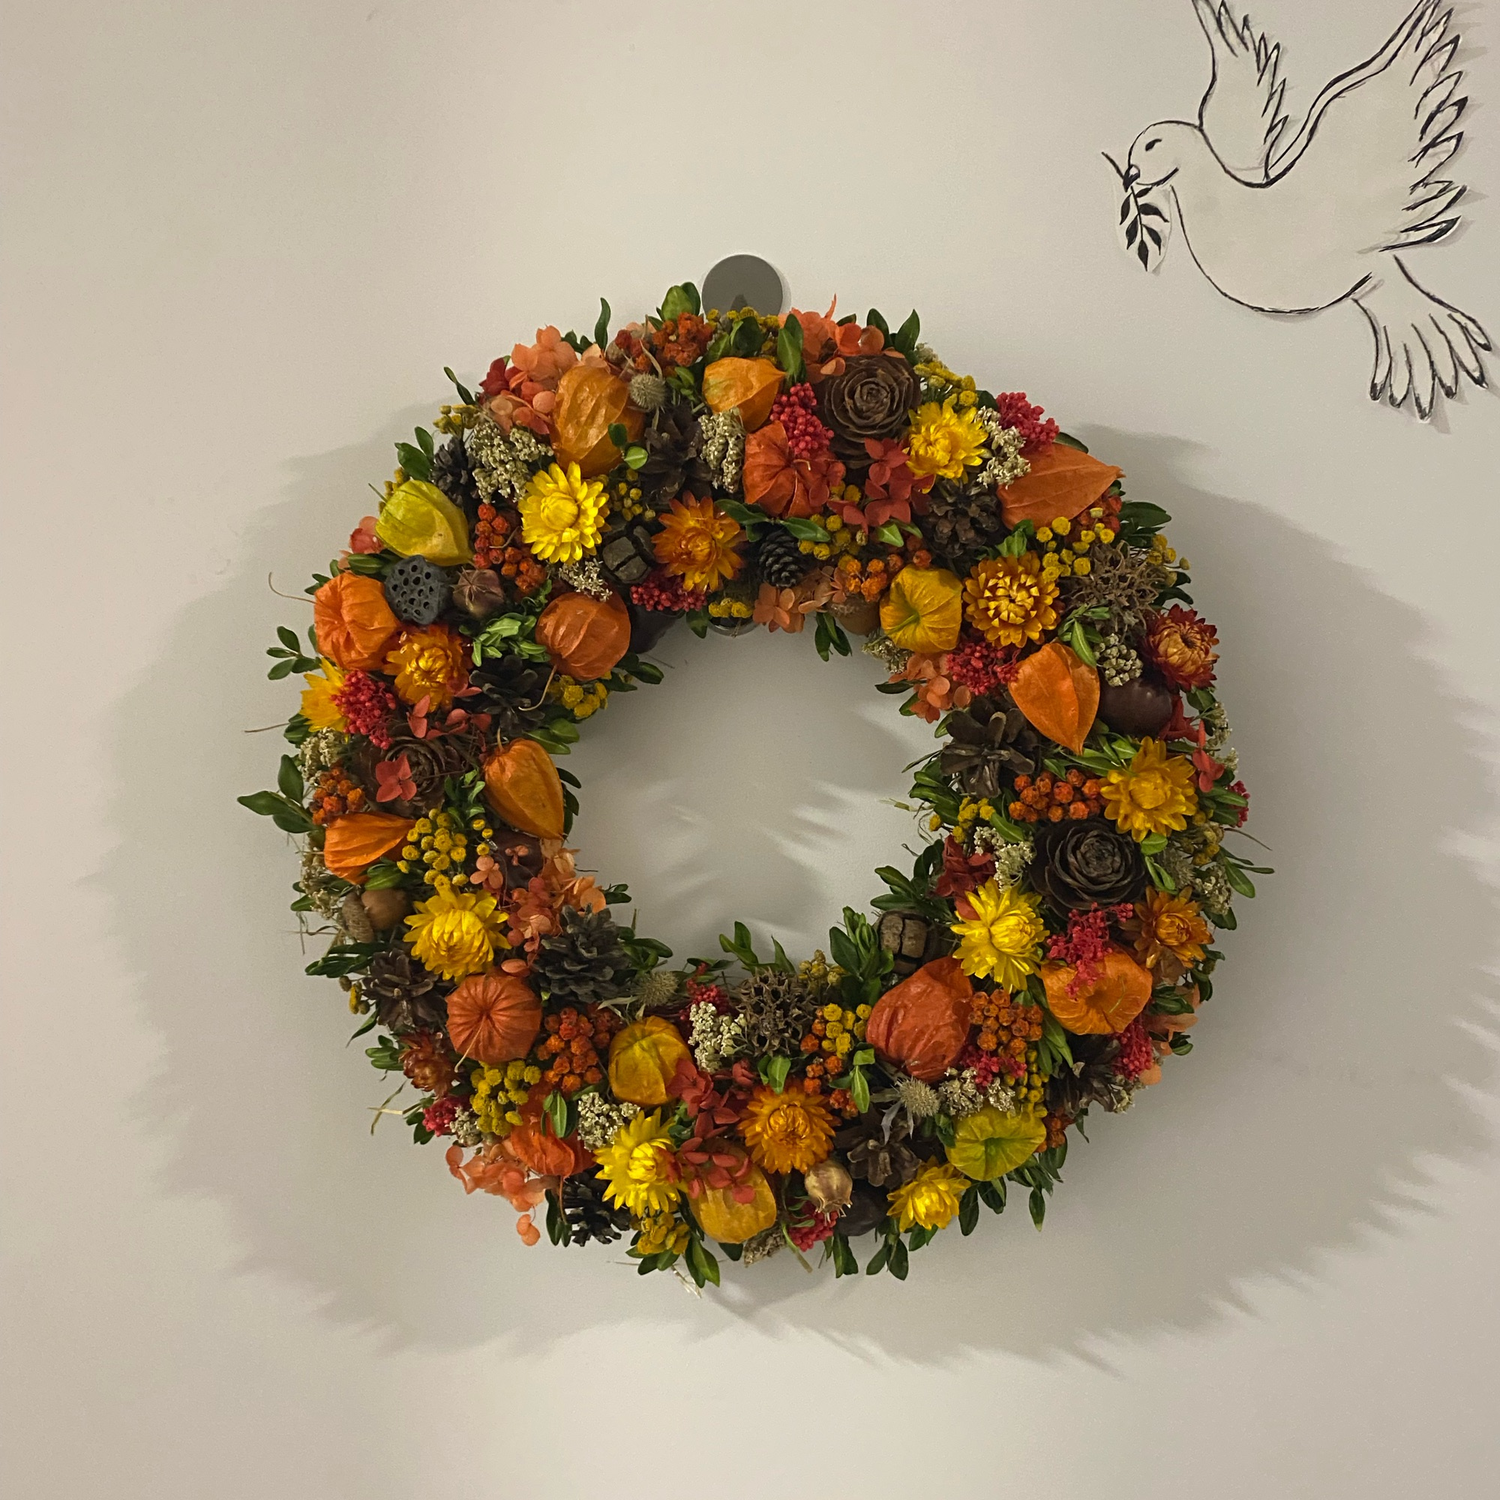 Фото №1 к отзыву покупателя Василисса о товаре Осенний венок в эко стиле из сухоцветов и природных материалов